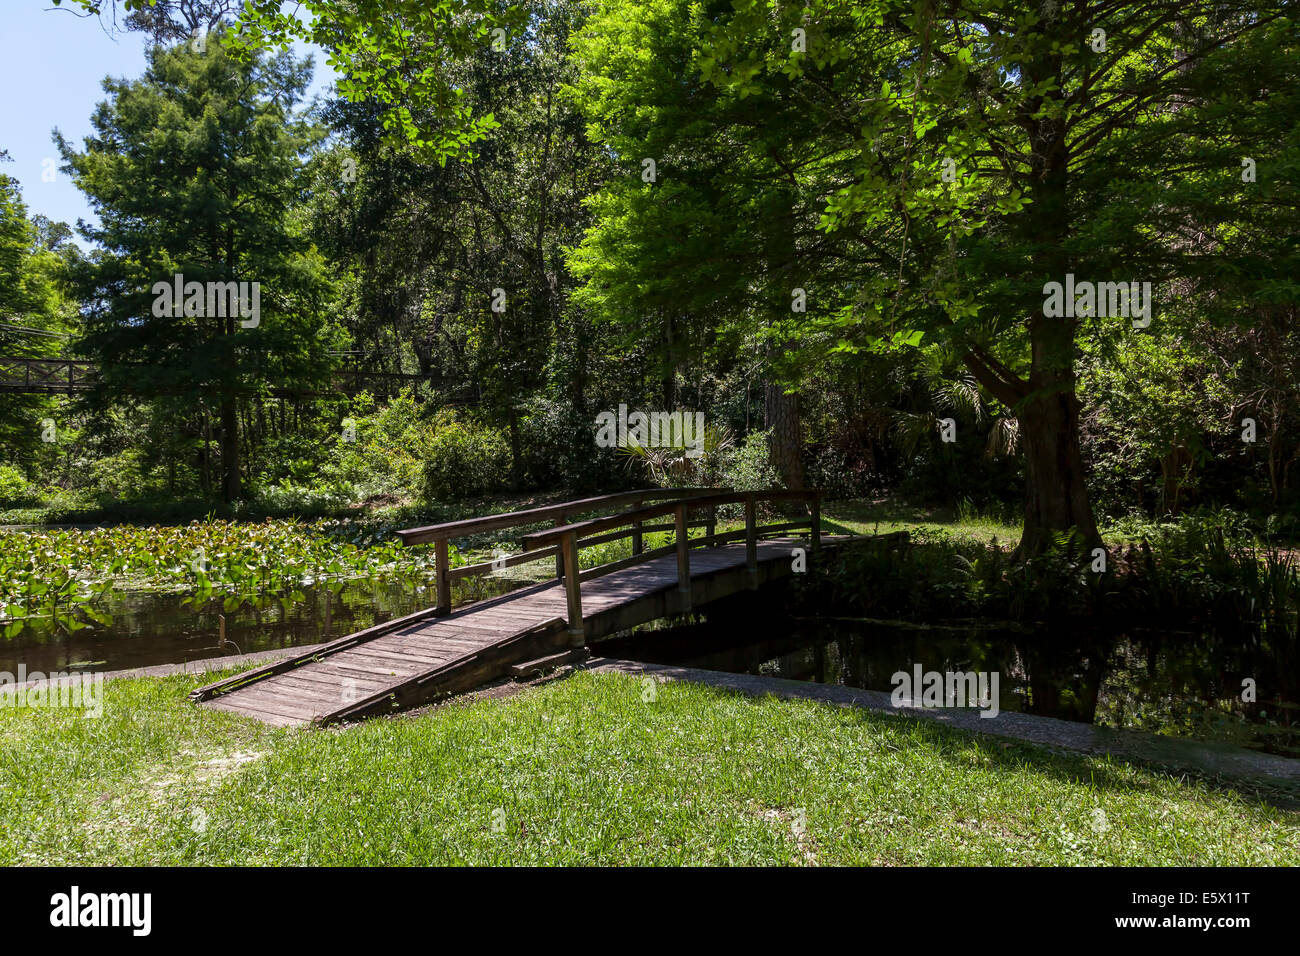 Un basso ponte di legno attraversa un pittoresco laghetto costeggiata da cipressi nel burrone giardini del Parco Statale di Palatka, in Florida, Stati Uniti d'America. Foto Stock